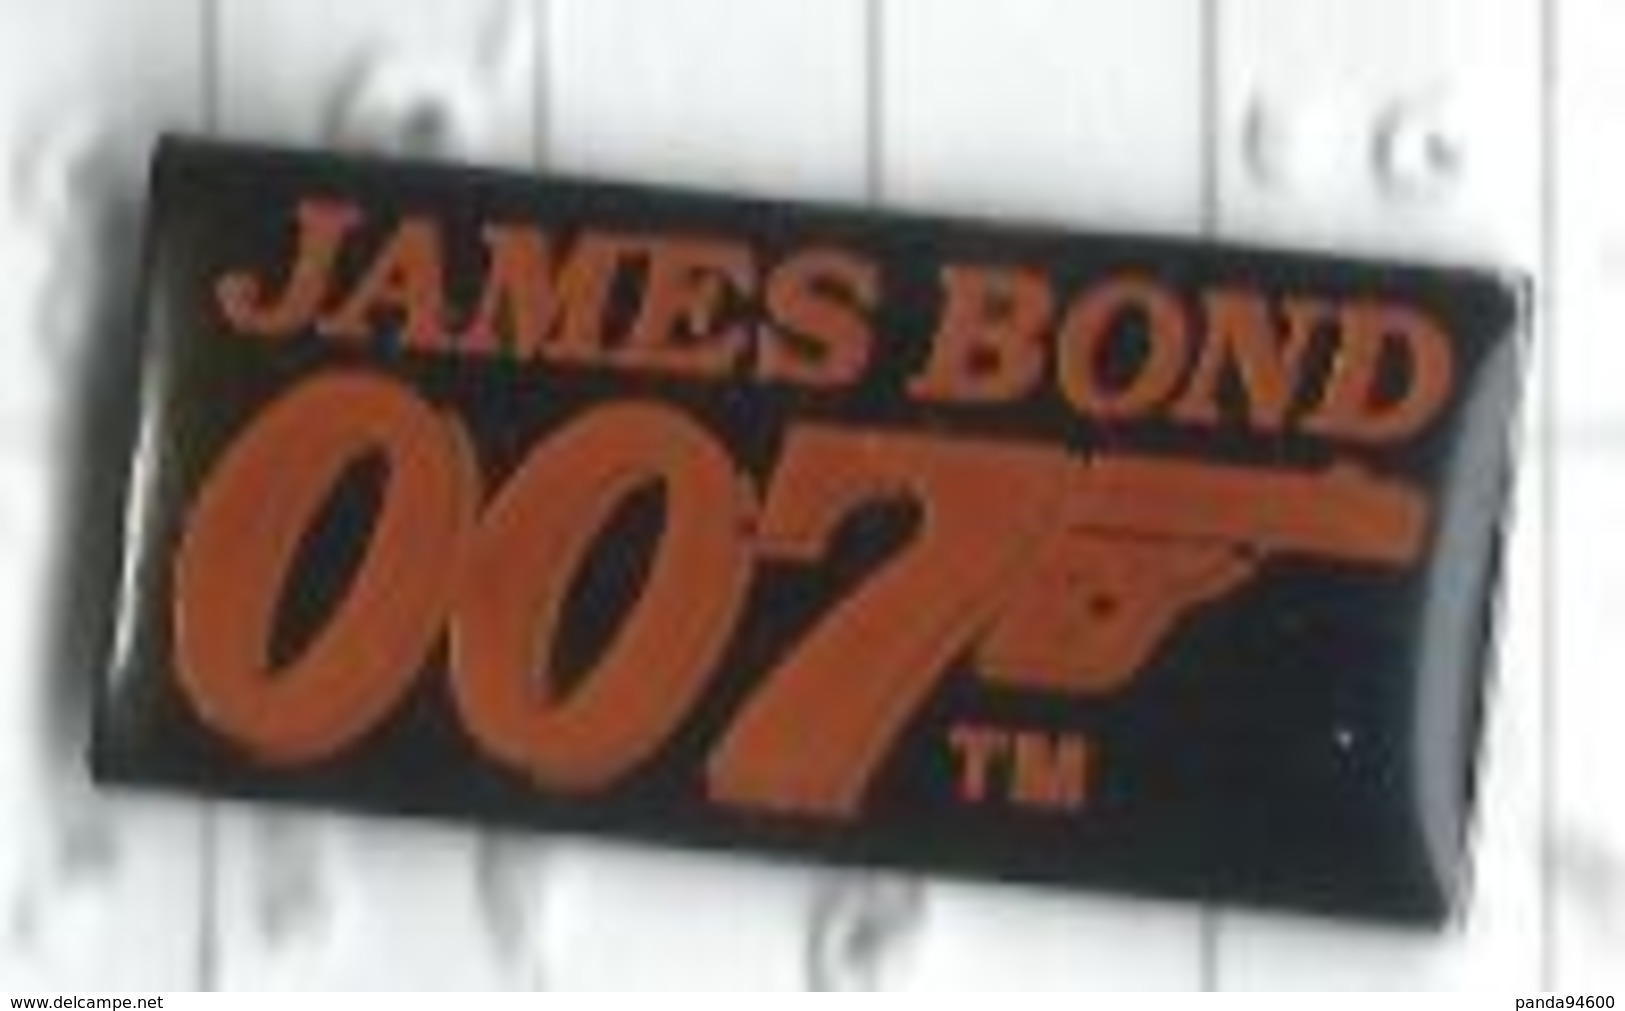 James Bond 007 - Cinema